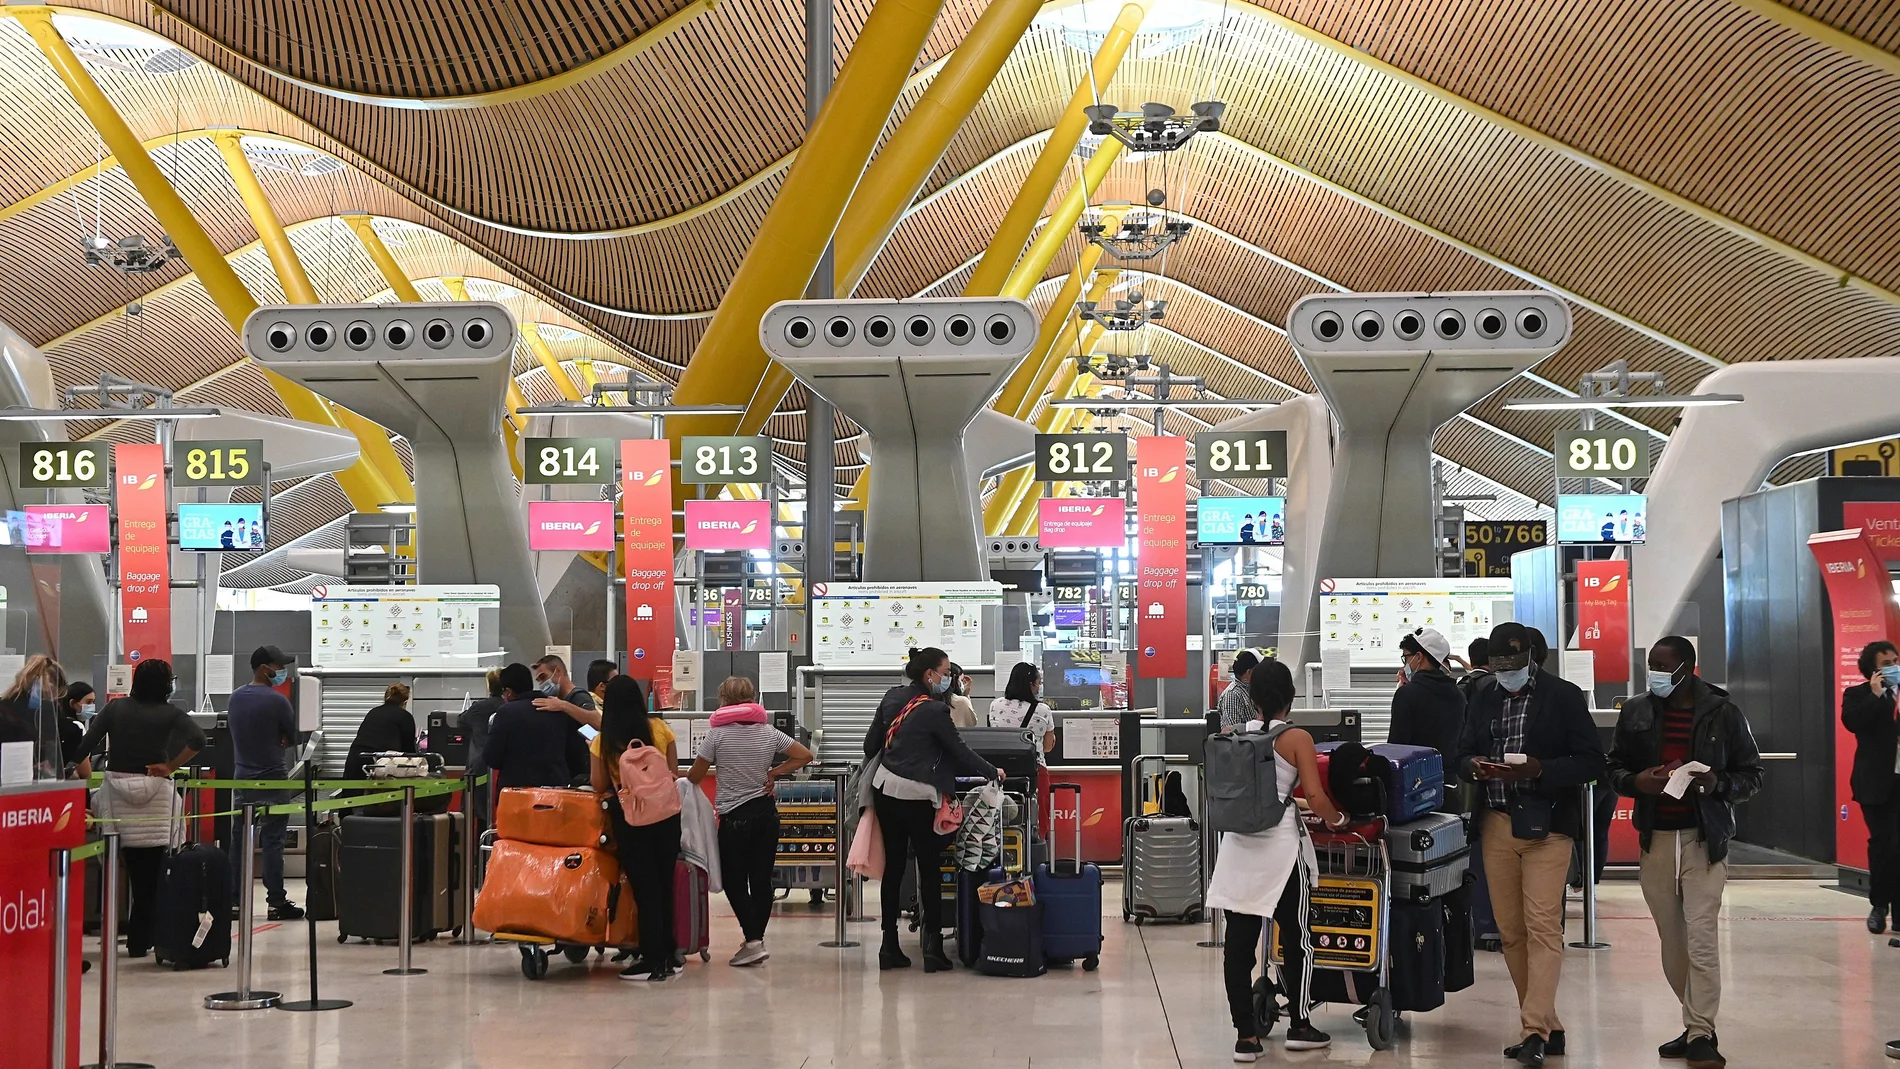 Vista general de la zona de facturación de equipajes en la T-4 del Aeropuerto Adolfo Suárez Madrid-Barajas